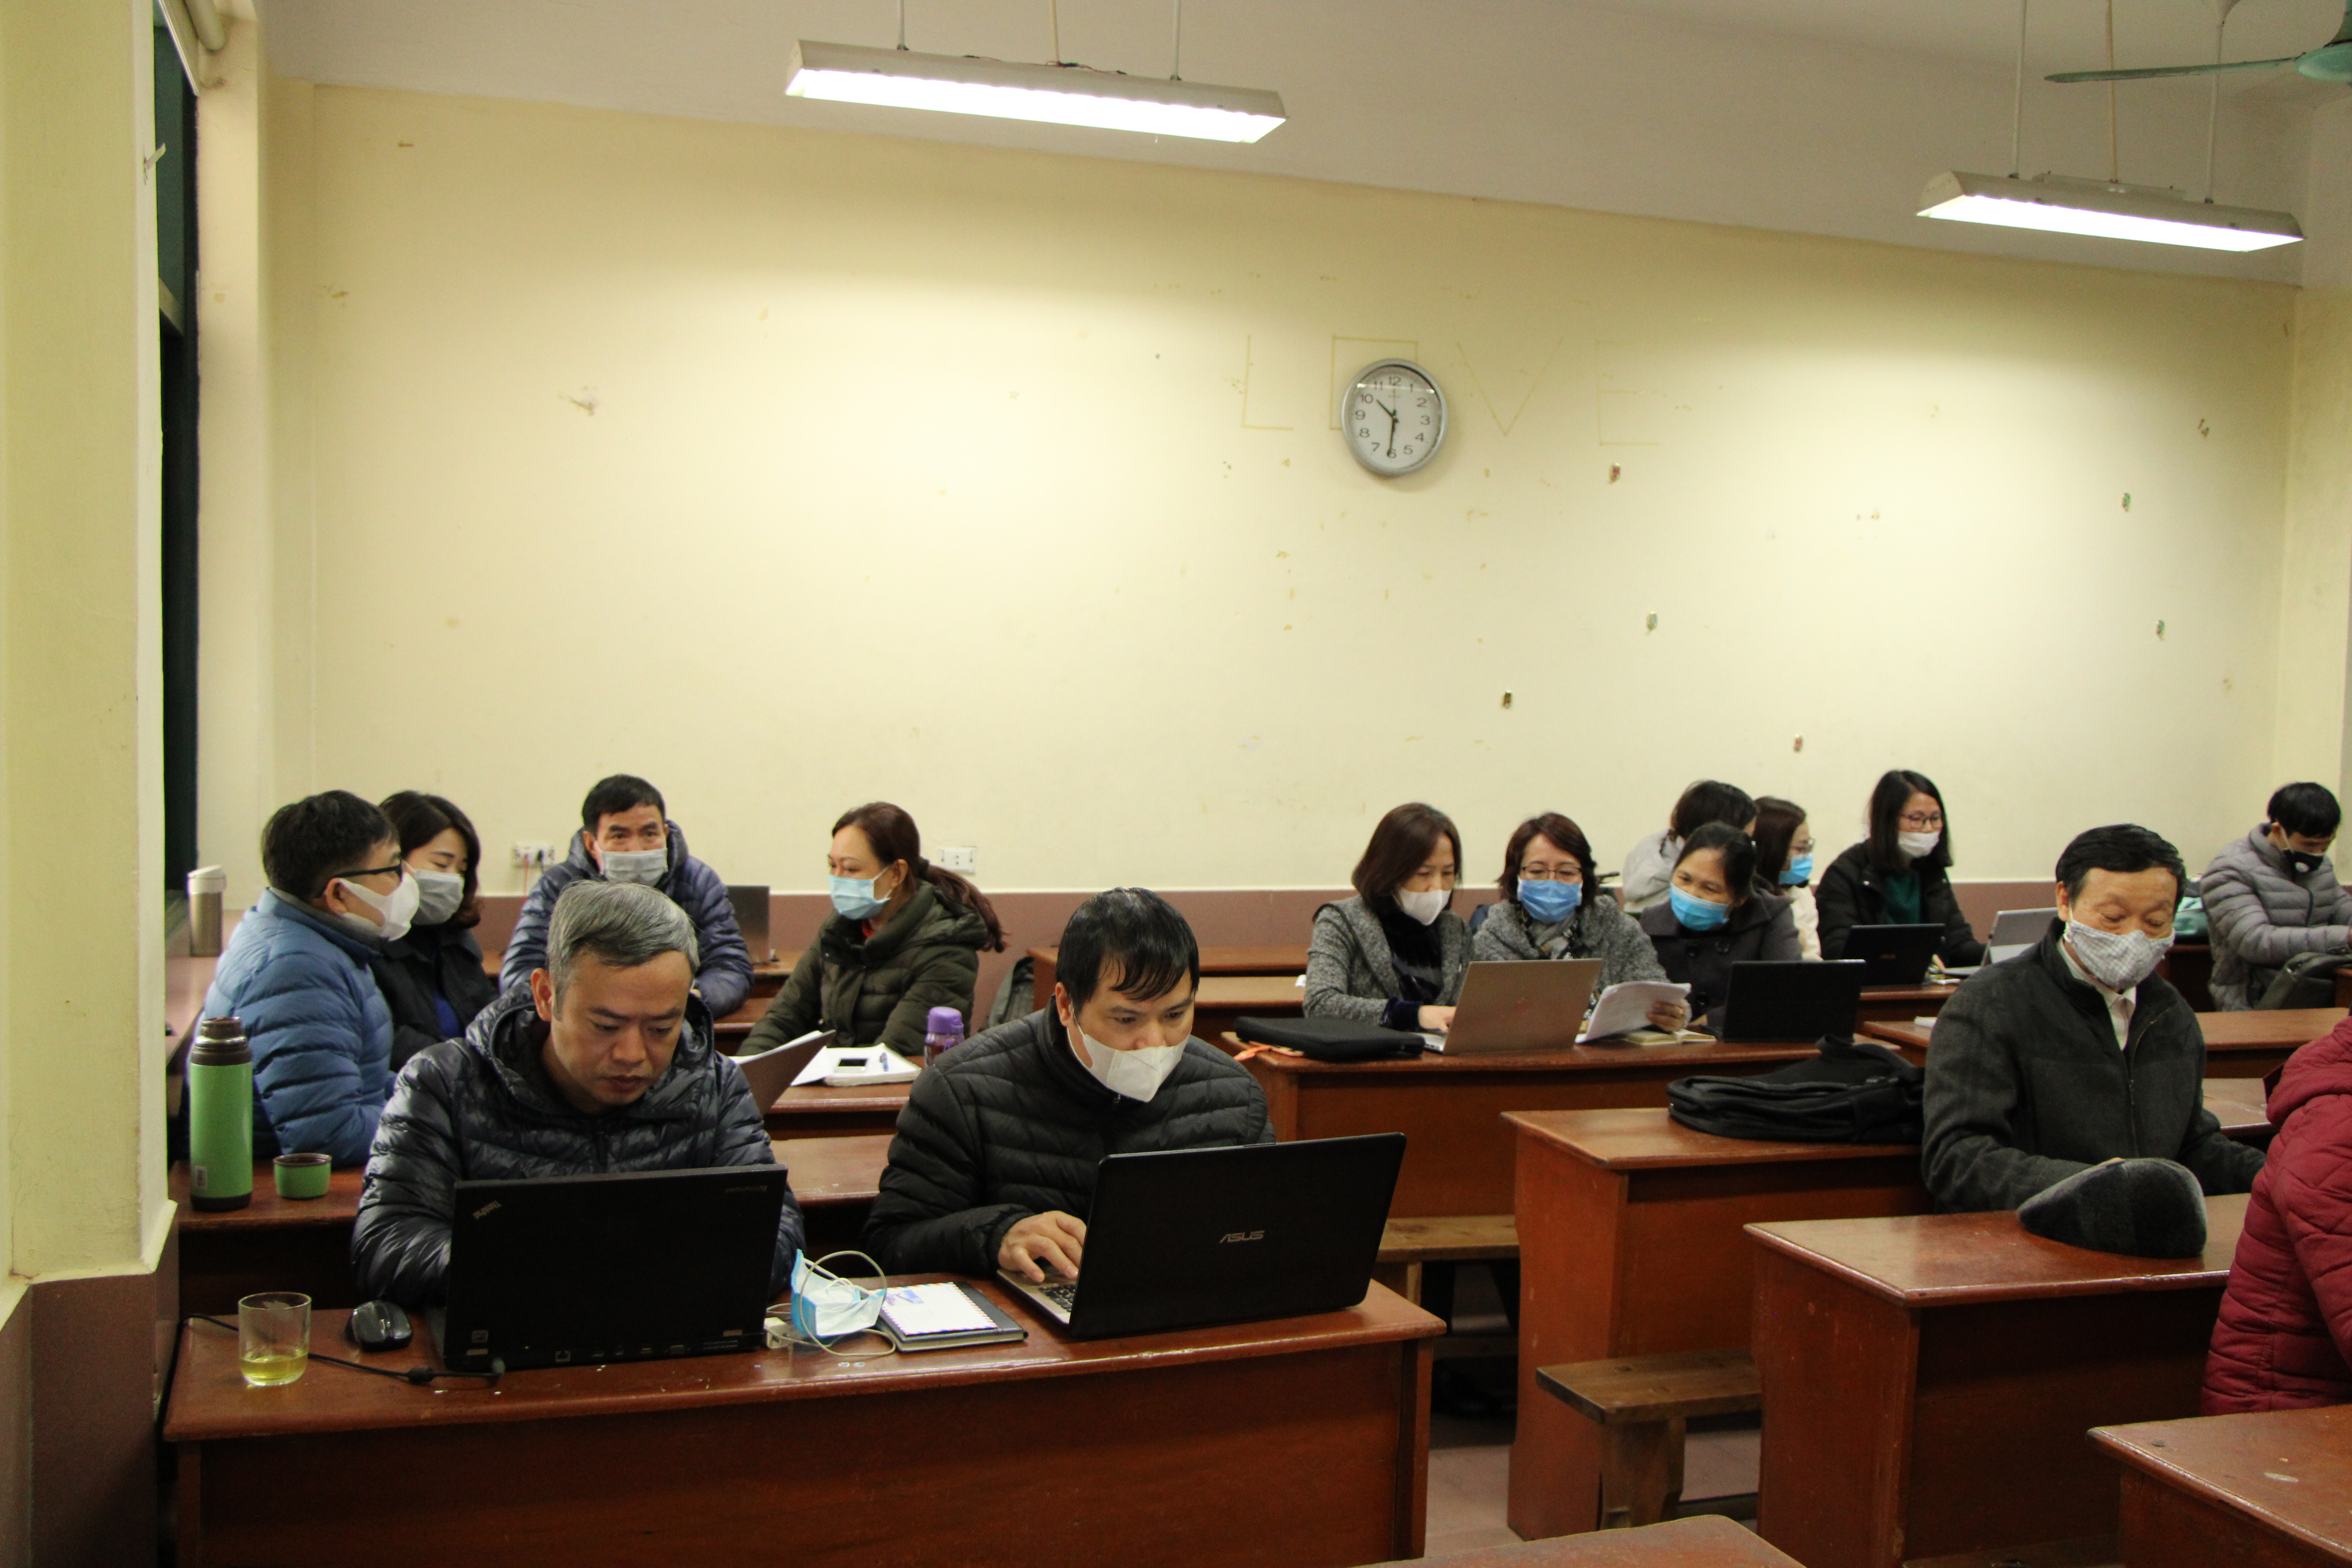 Trường NTT triển khai dạy học trực tuyến để phòng, chống dịch nCoV